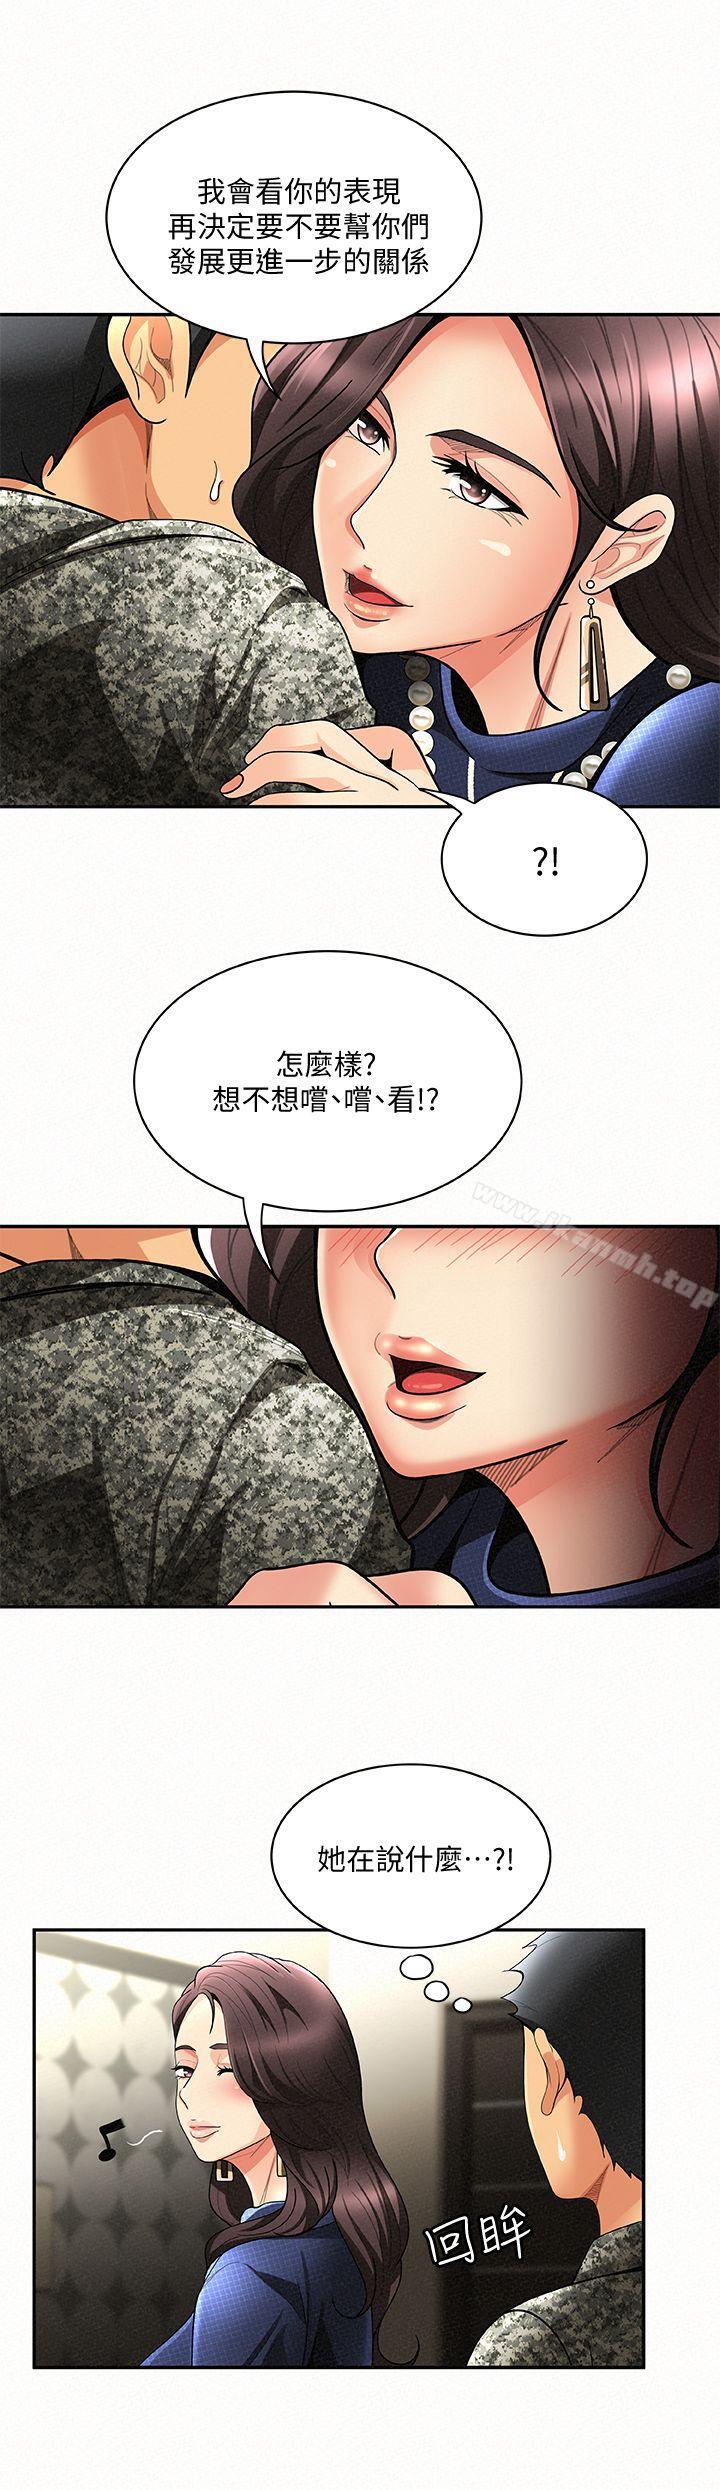 韩国漫画报告夫人韩漫_报告夫人-第3话-想不想嚐嚐其他有夫之妇?在线免费阅读-韩国漫画-第6张图片